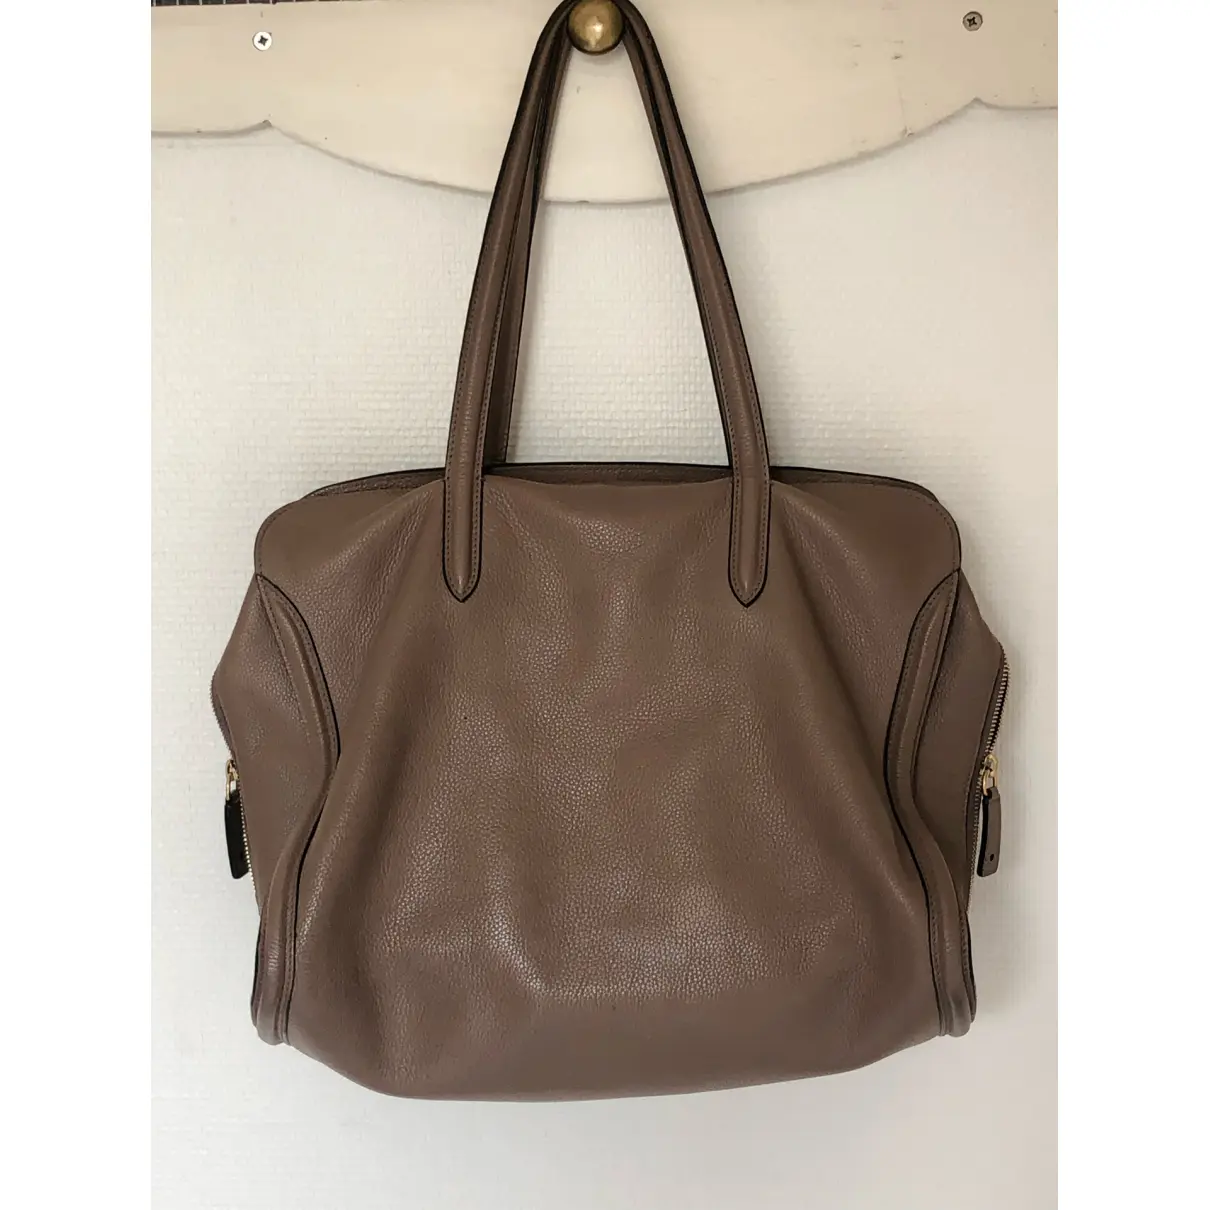 Buy Alexander McQueen Zippé leather handbag online